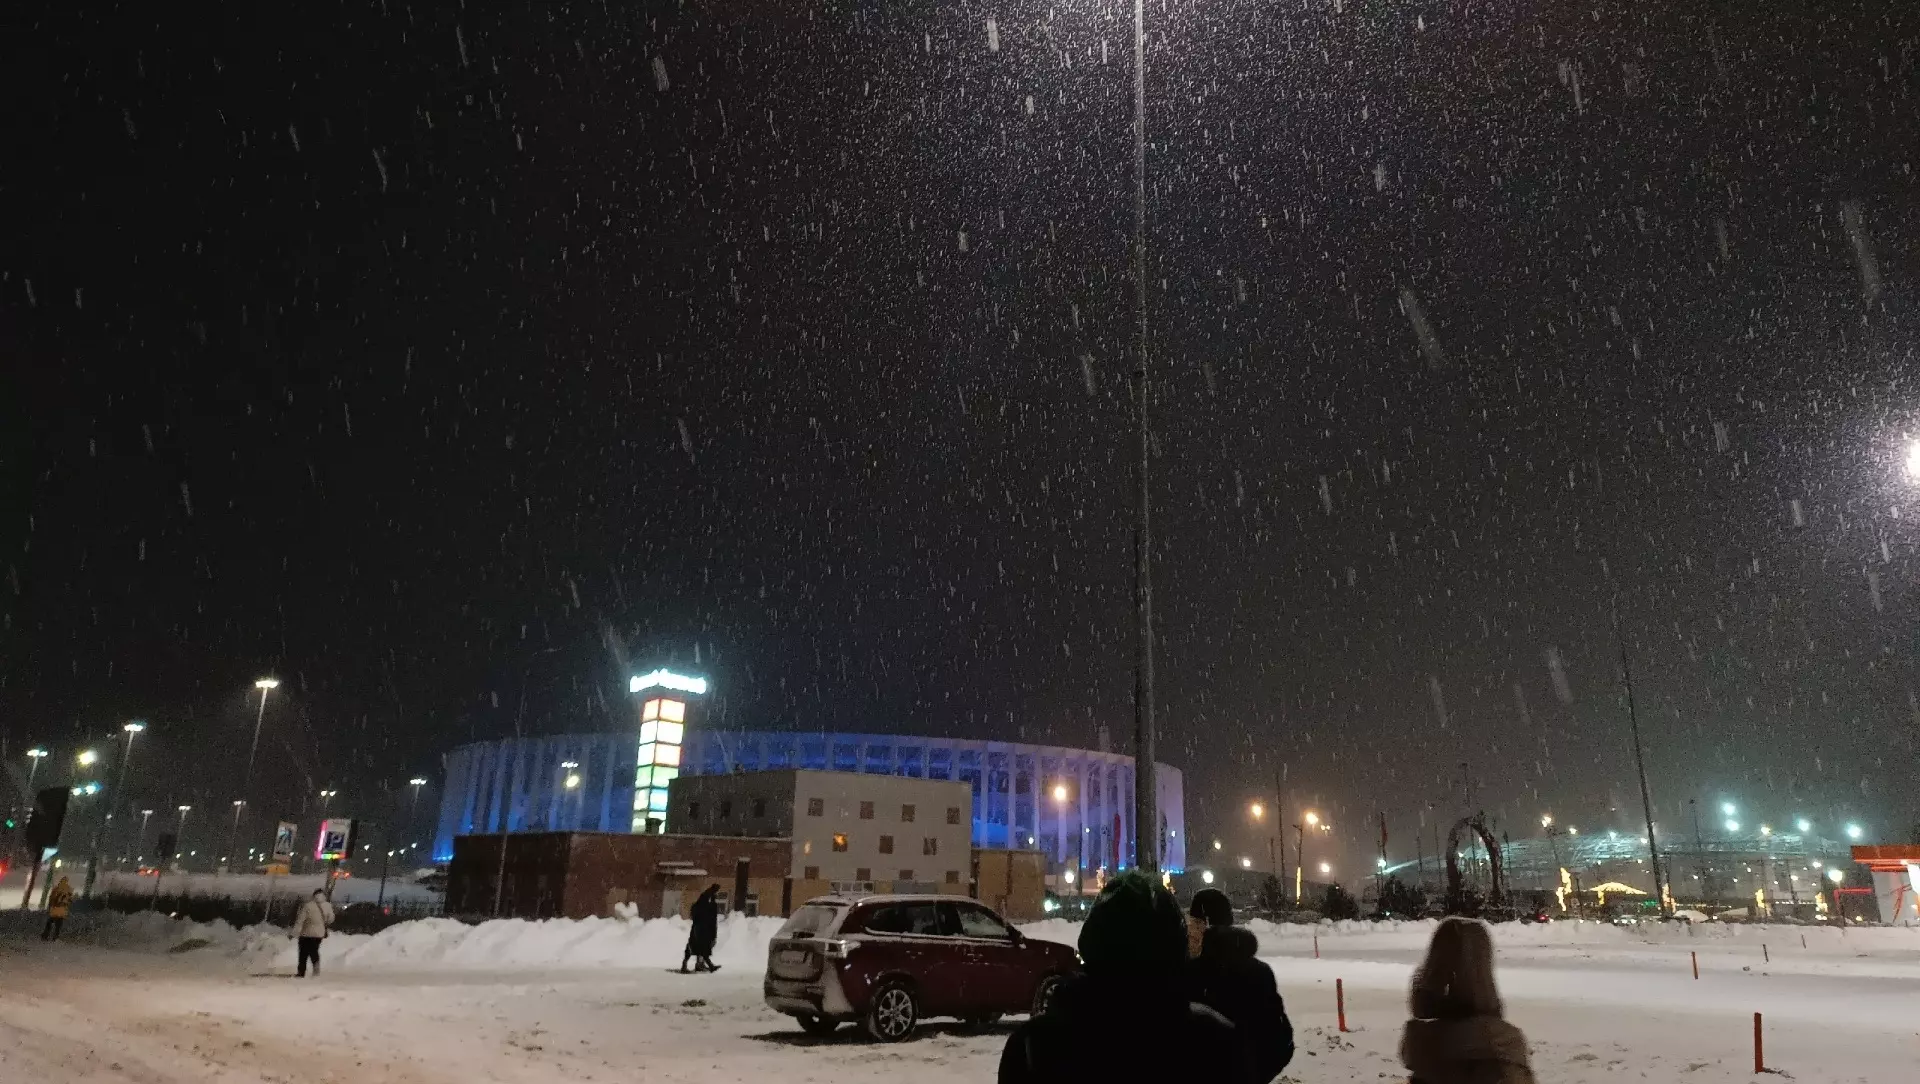 Циклон принес обильные снегопады в Нижний Новгород